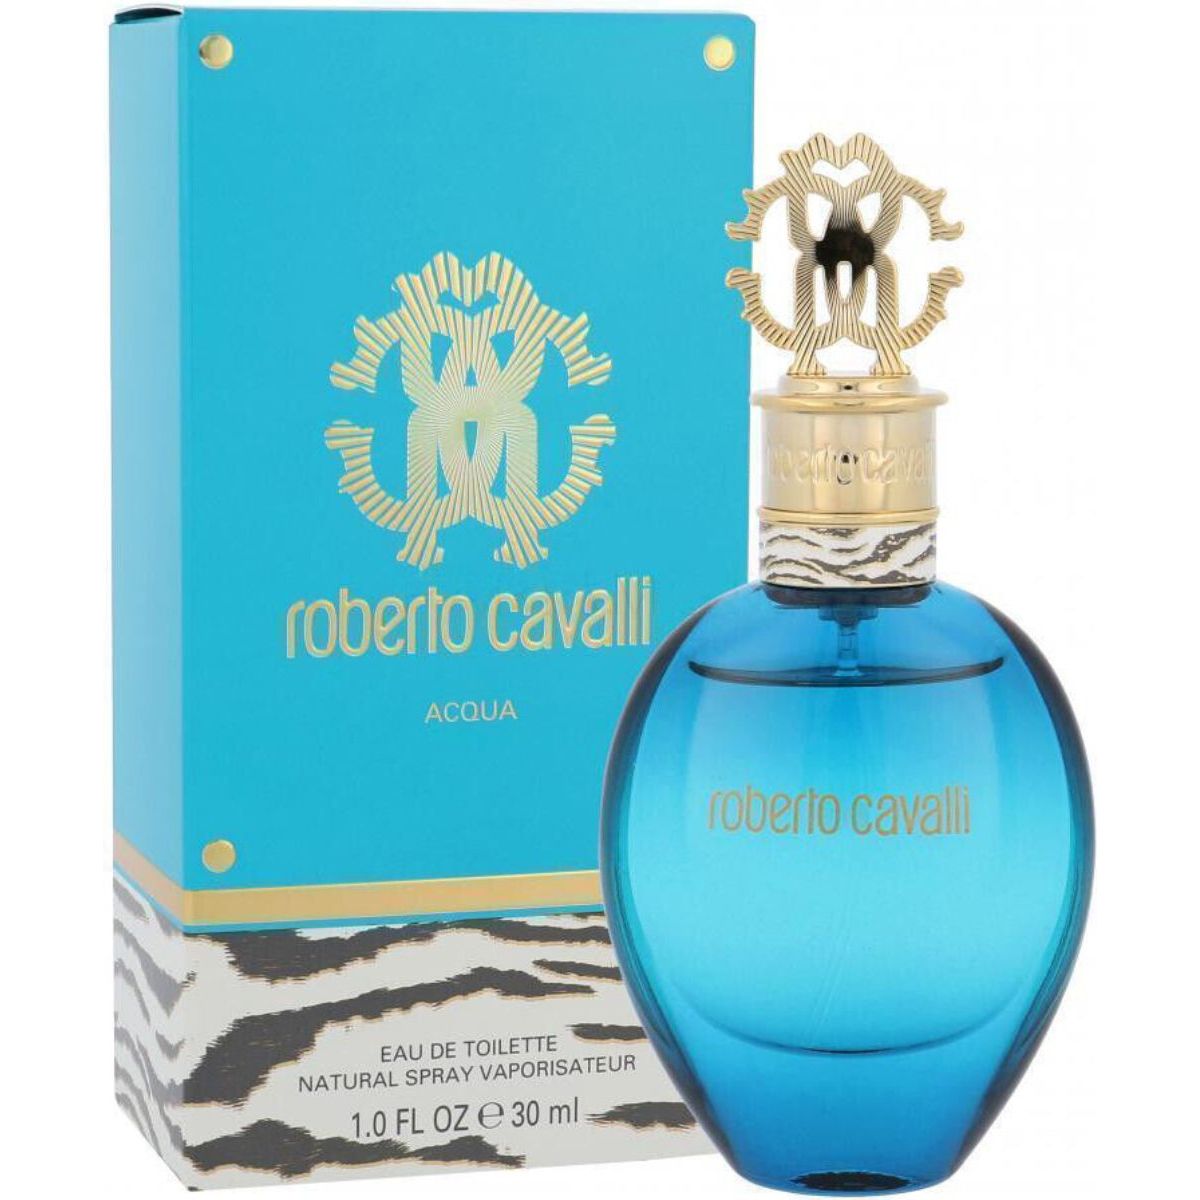 Acqua by Roberto Cavalli for women EDT 1.0 oz New In Box